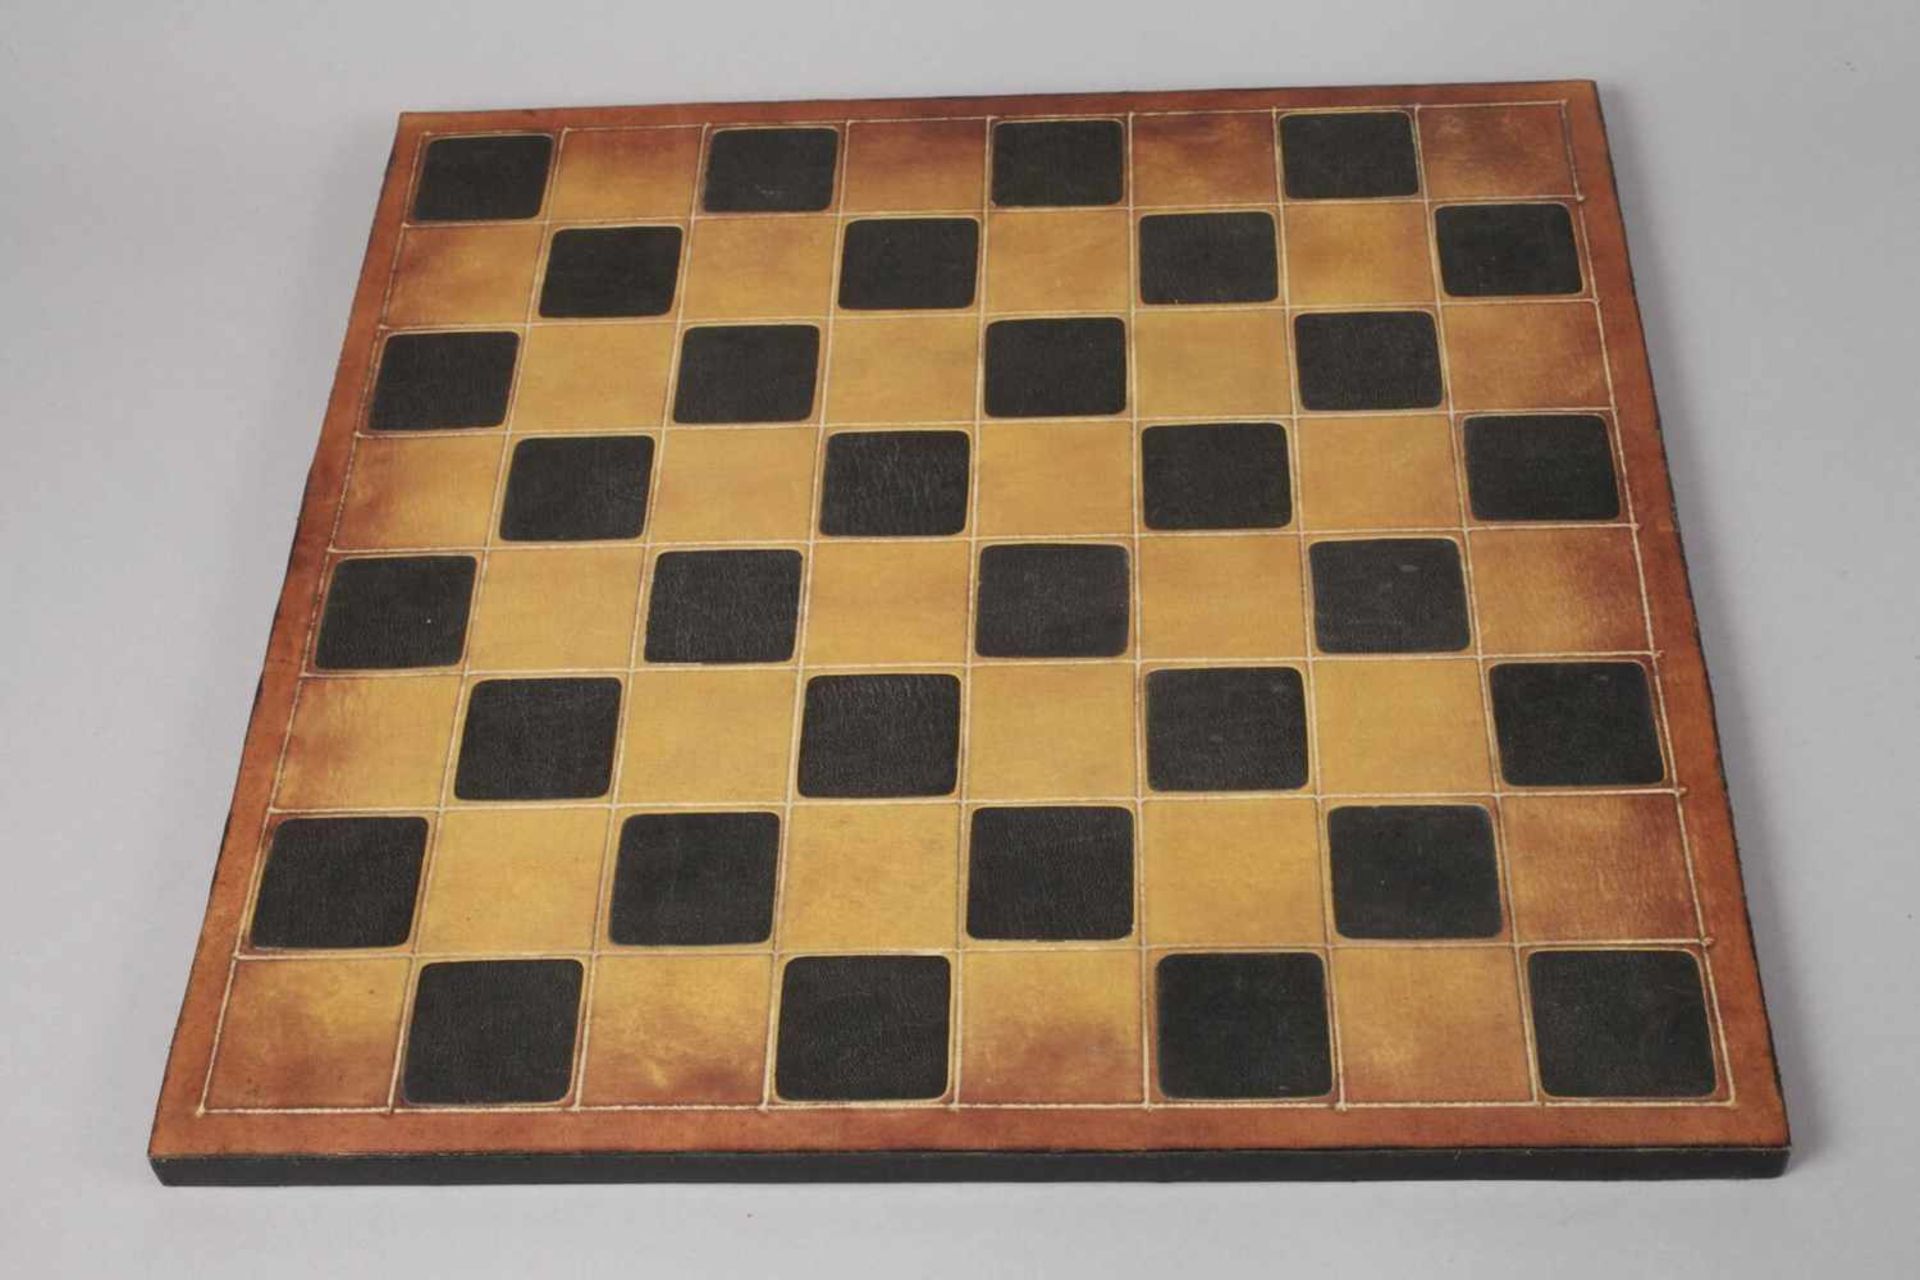 Schachspiel KeramikKanada 20. Jh., alle gemarkt CISA Canada, teils farbig gefasster, heller Scherben - Bild 2 aus 5